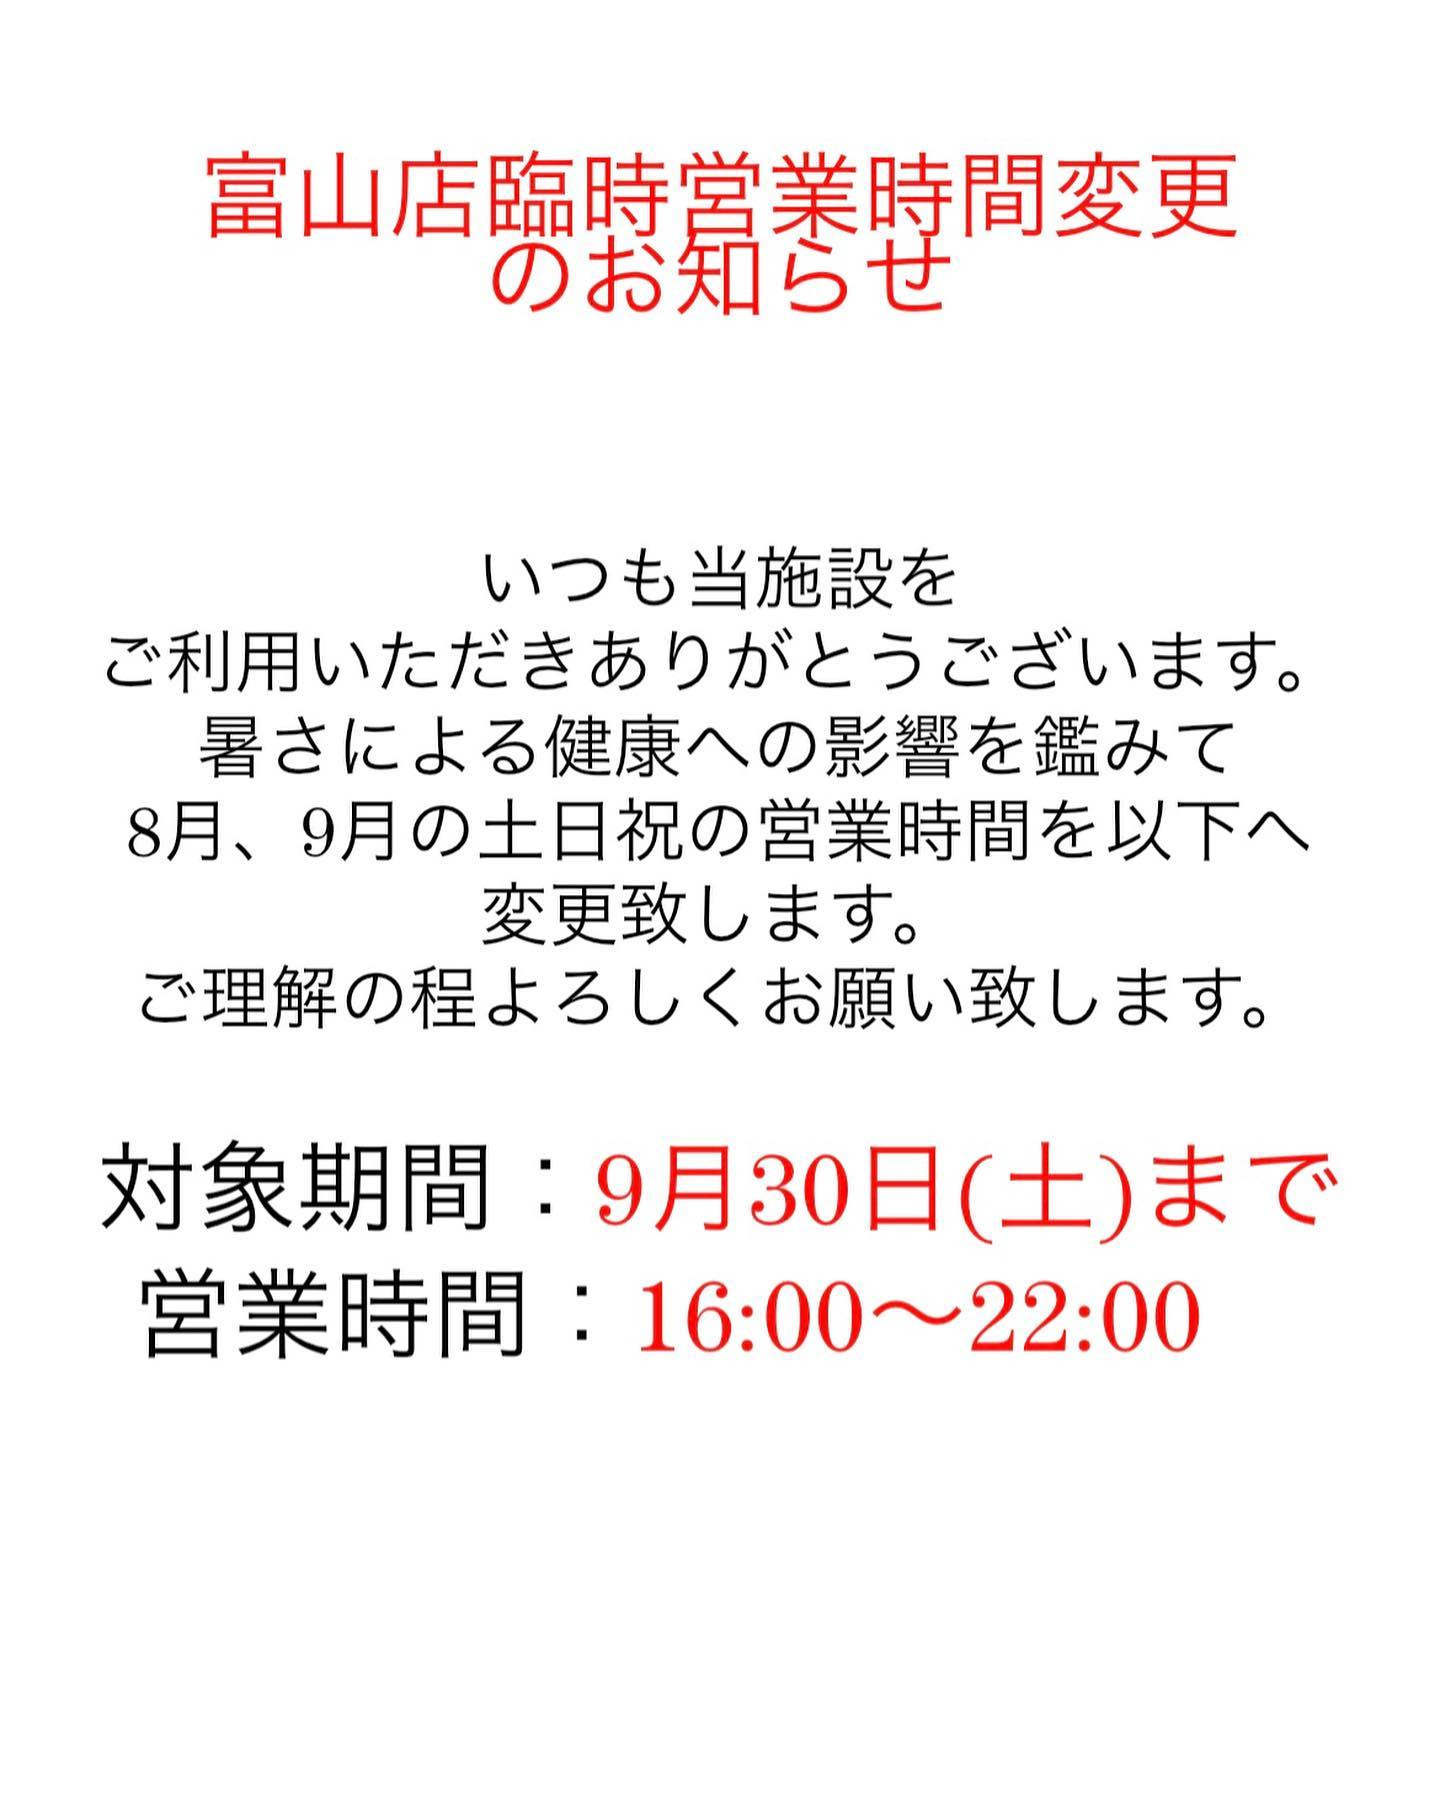 富山店臨時営業時間変更のお知らせです。